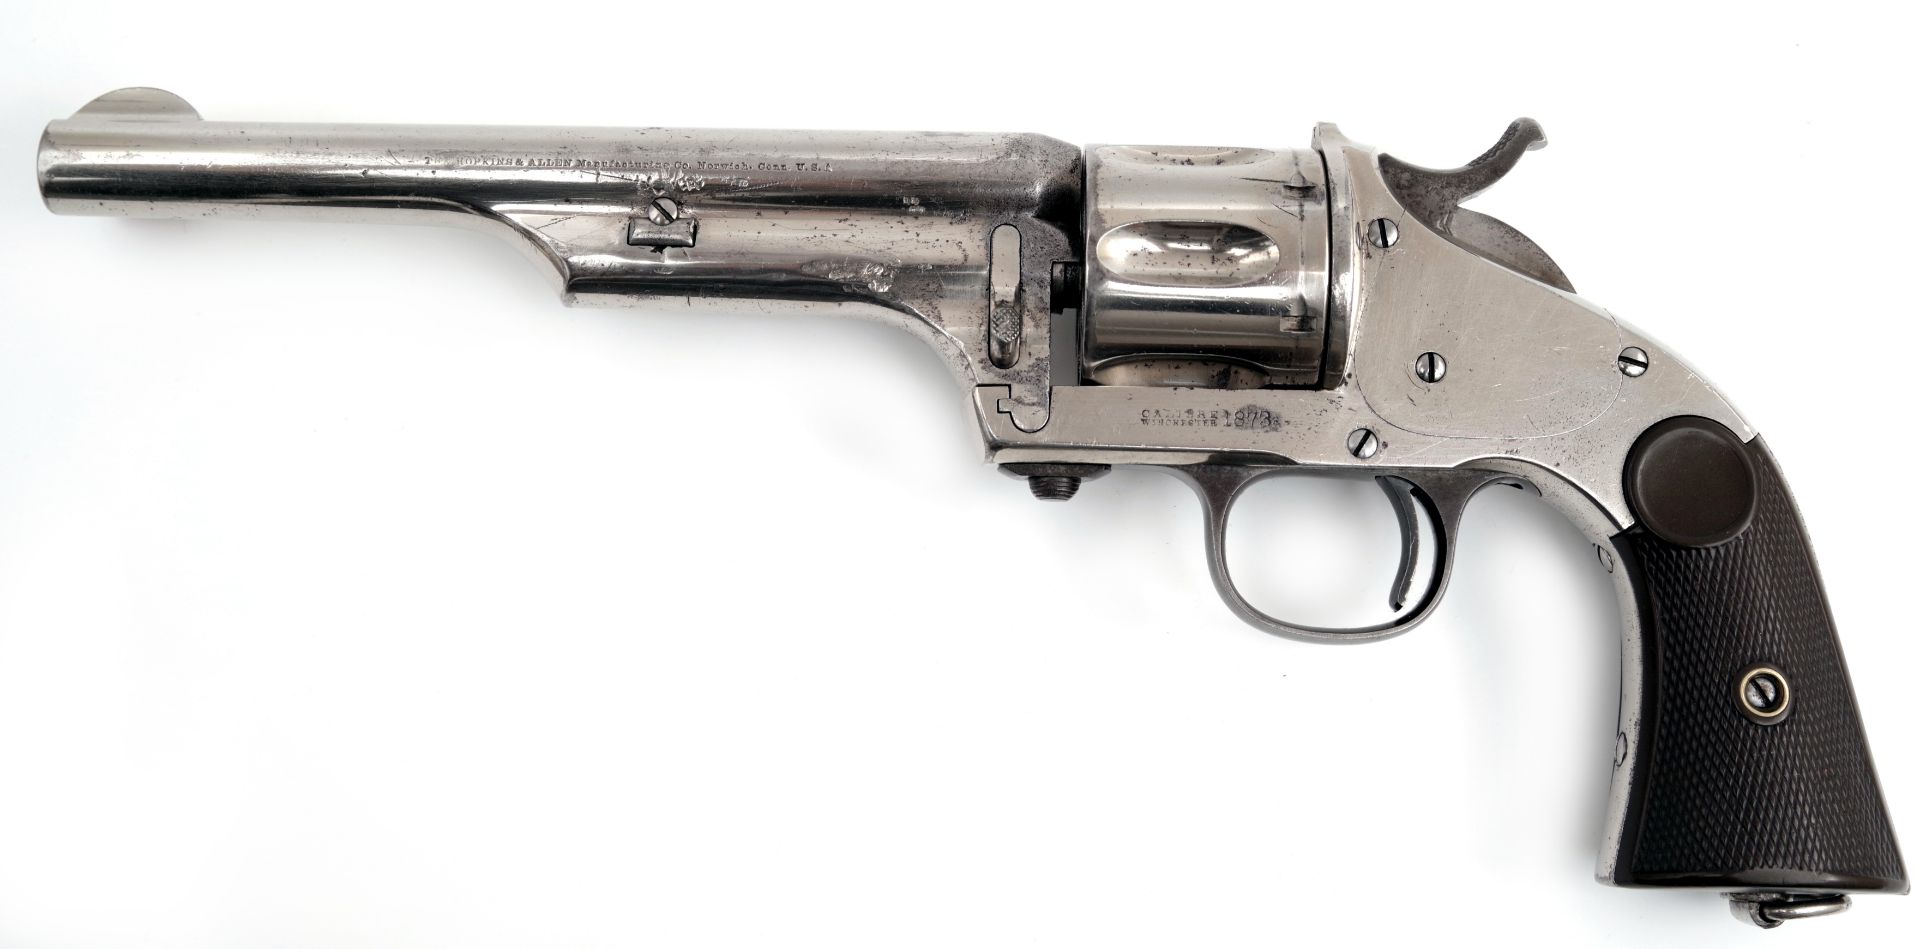 Merwin und Hulbert Revolver| Hersteller Hopkins & Allen - Bild 5 aus 5